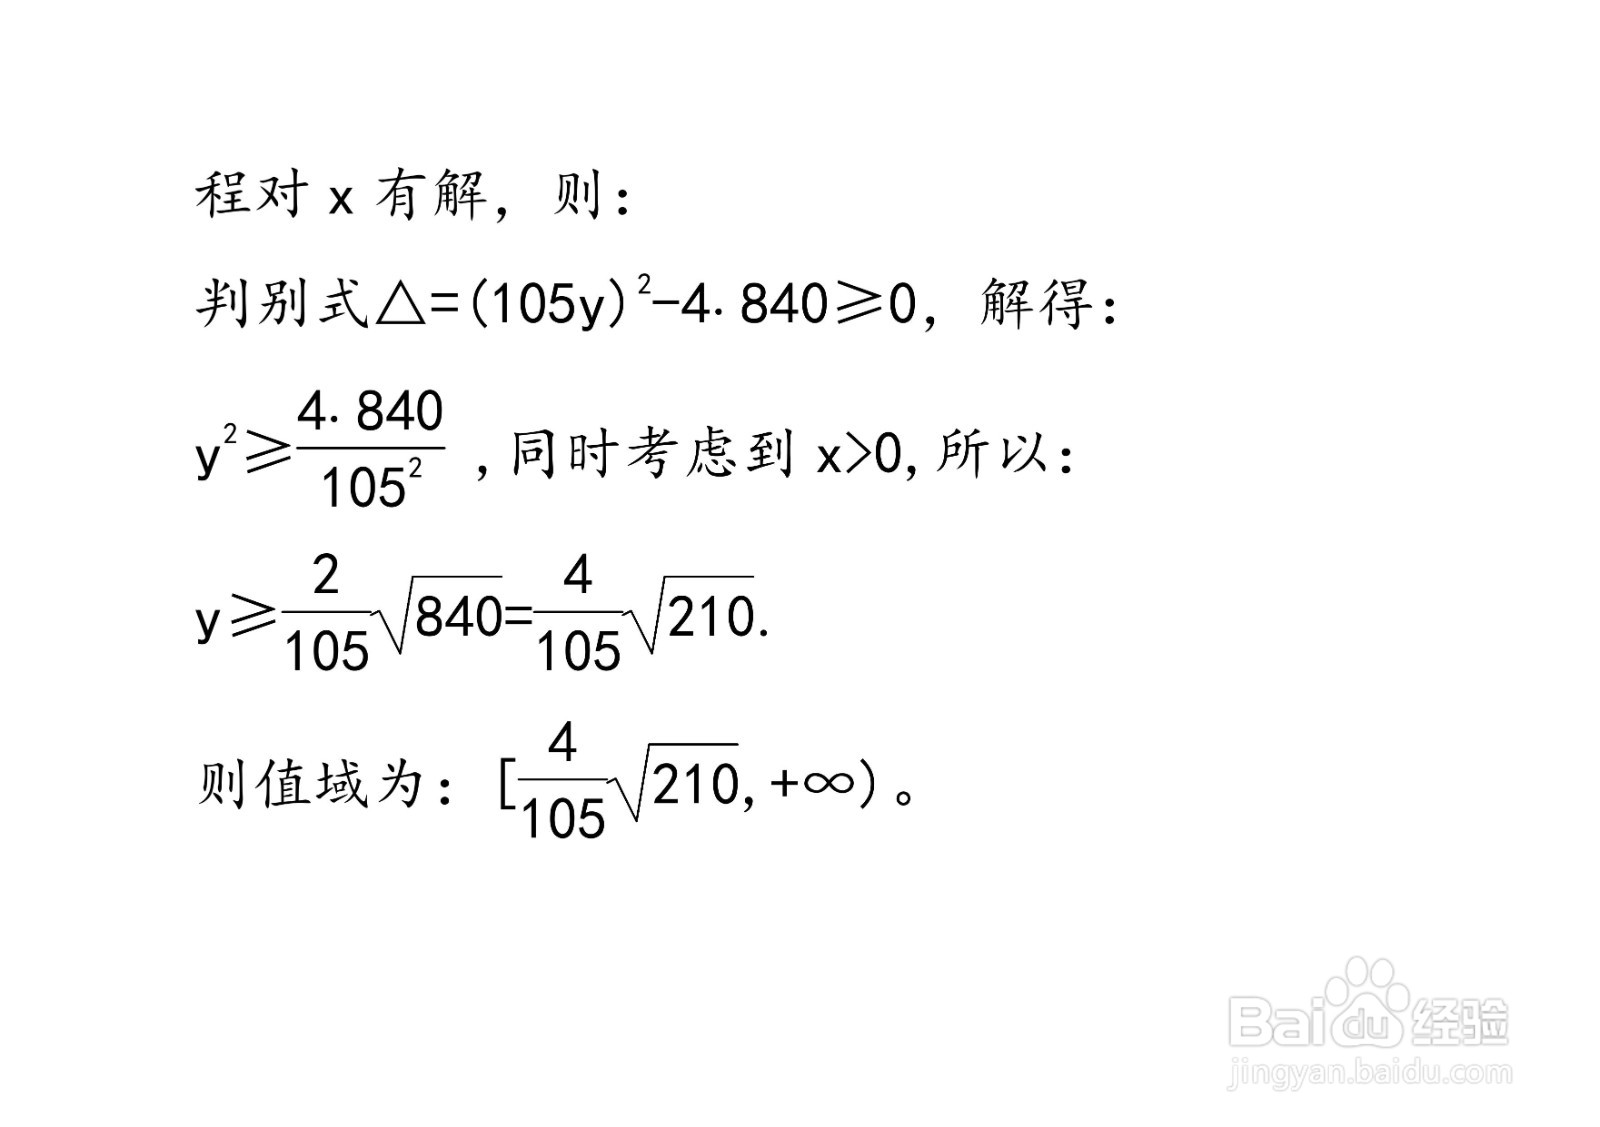 多种方法计算y=8x/7+1/15x在x大于0时的值域